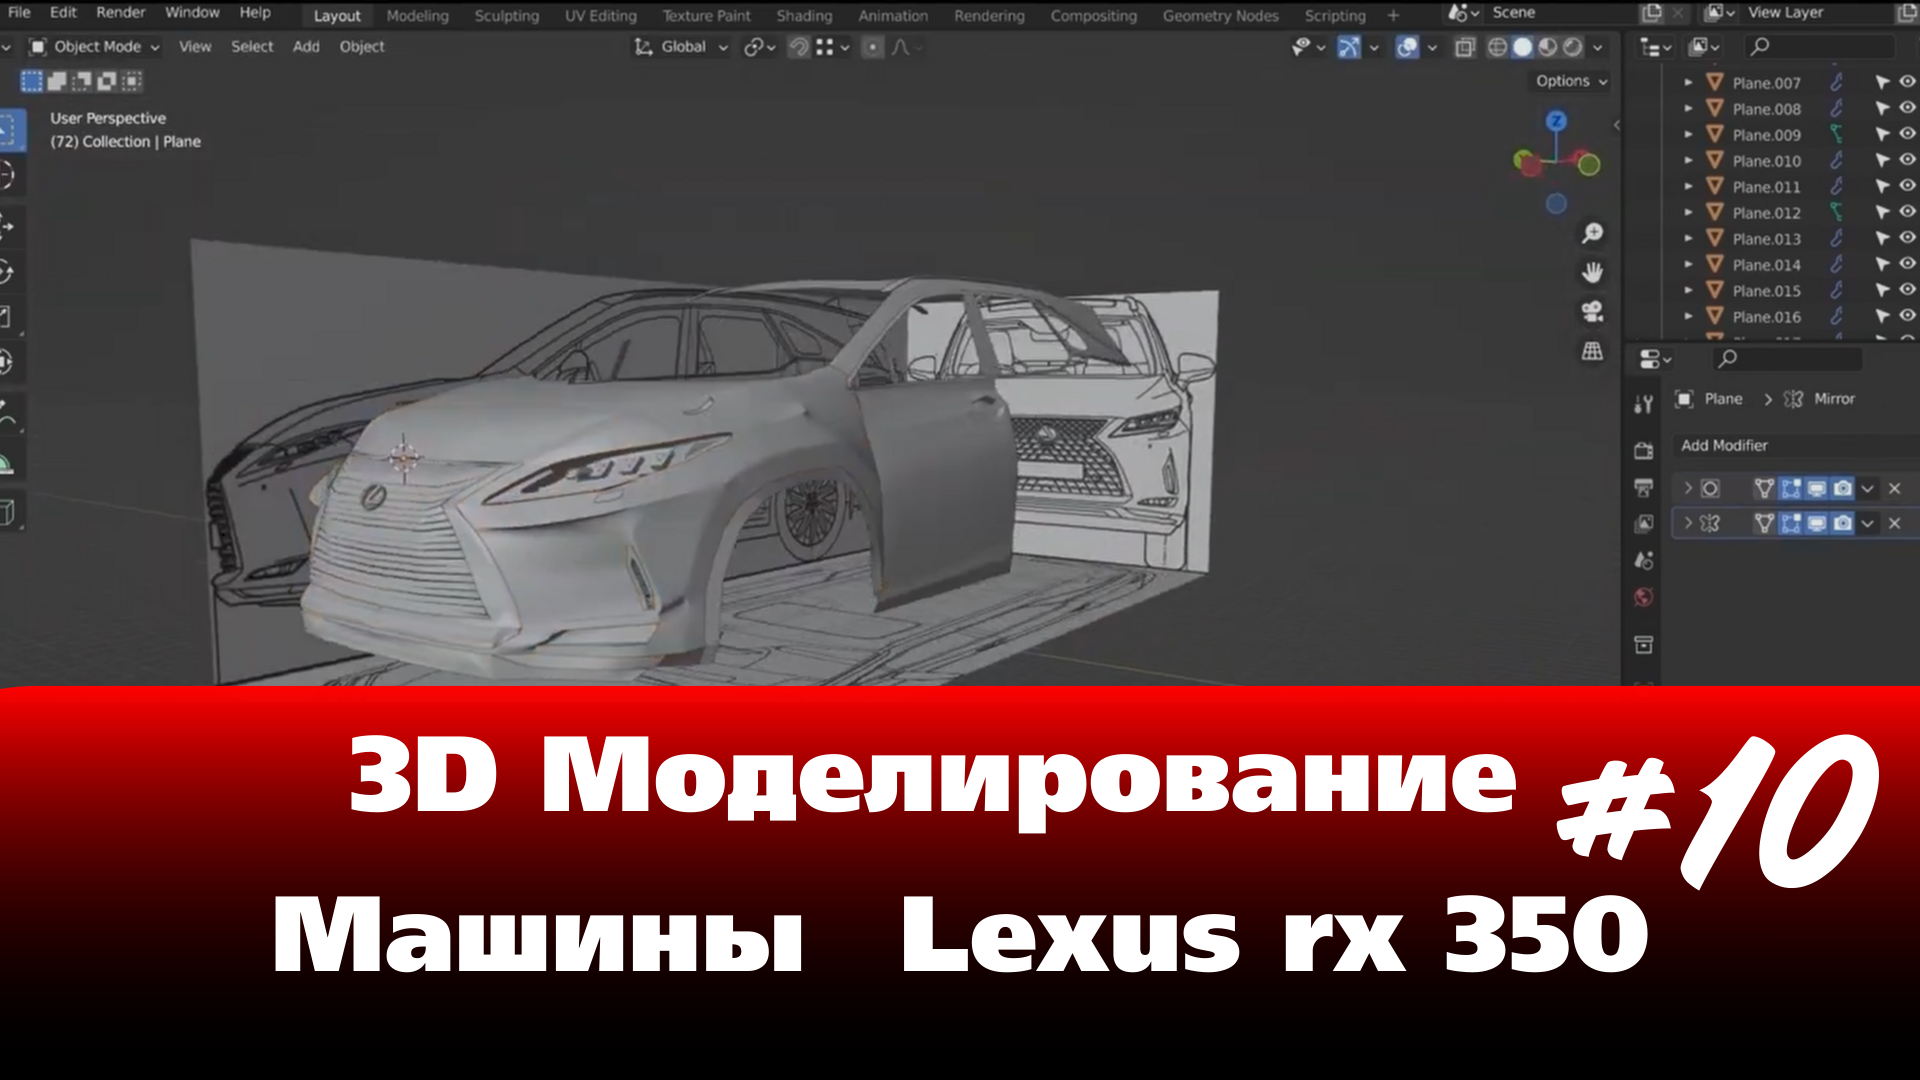 3D Моделирование Машины в Blender - Lexus rx 350 часть 10 #Blender